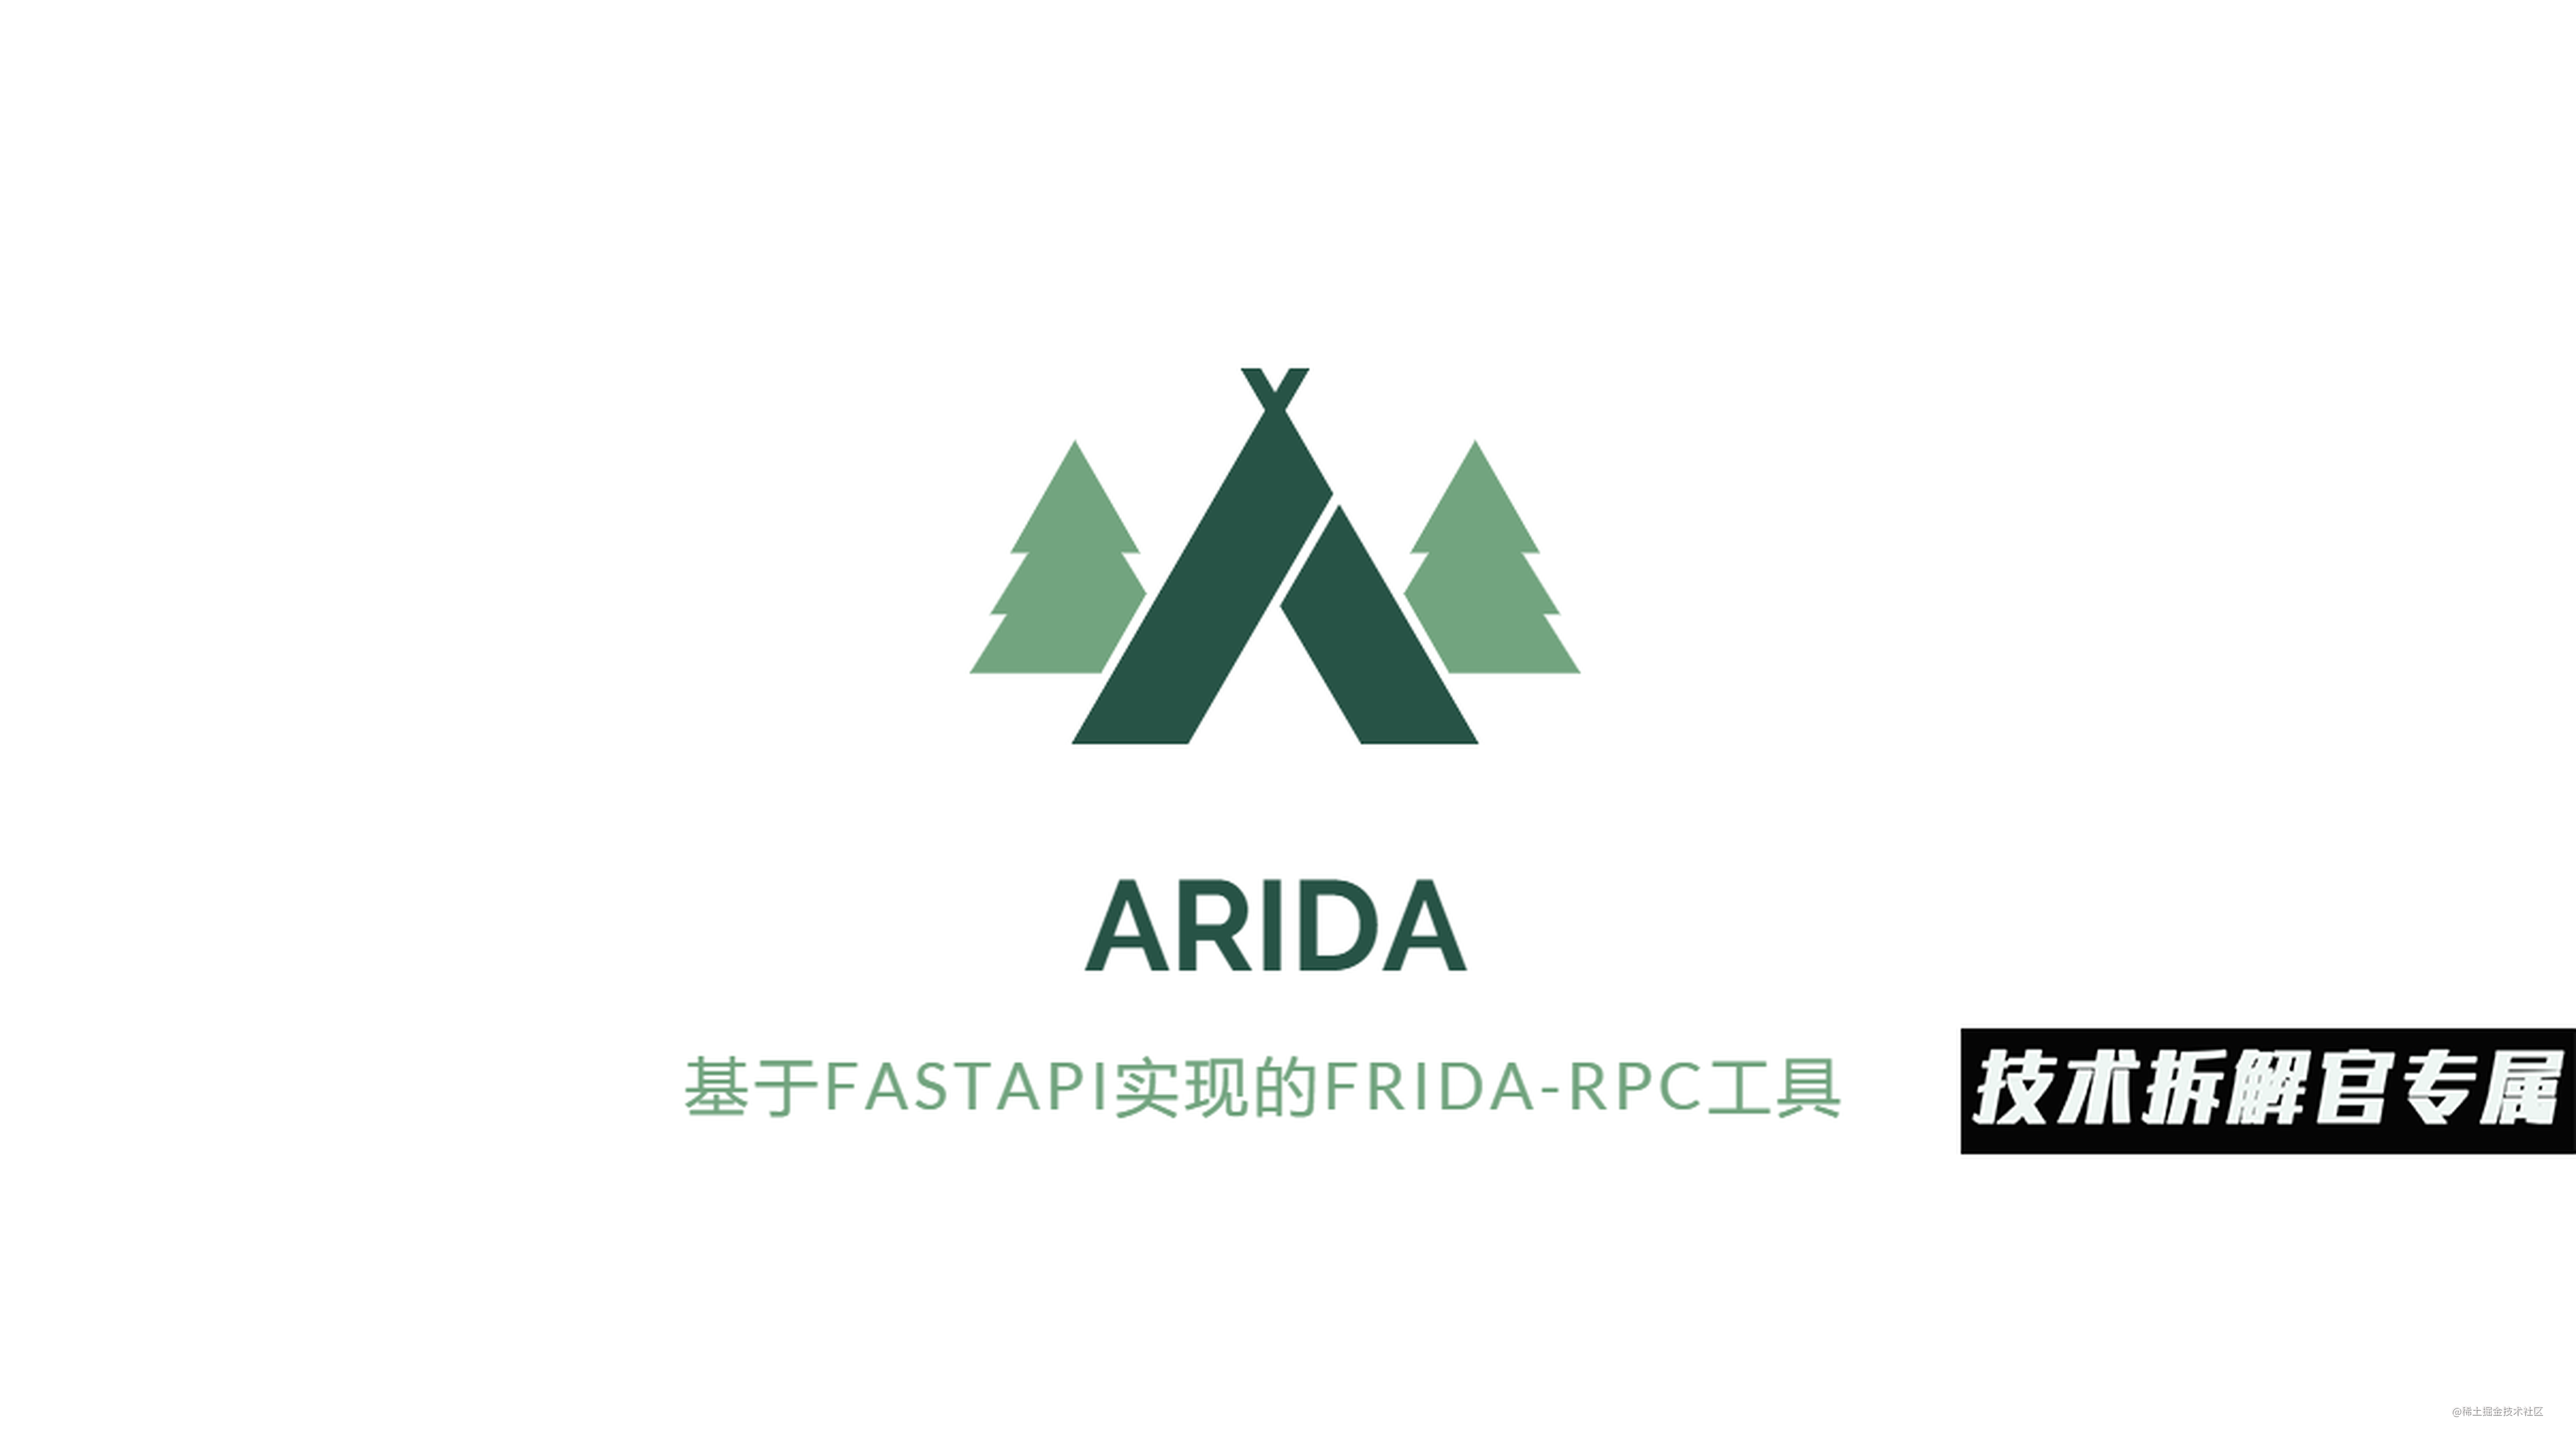 基于FastAPI实现的Frida-RPC工具-Arida解析